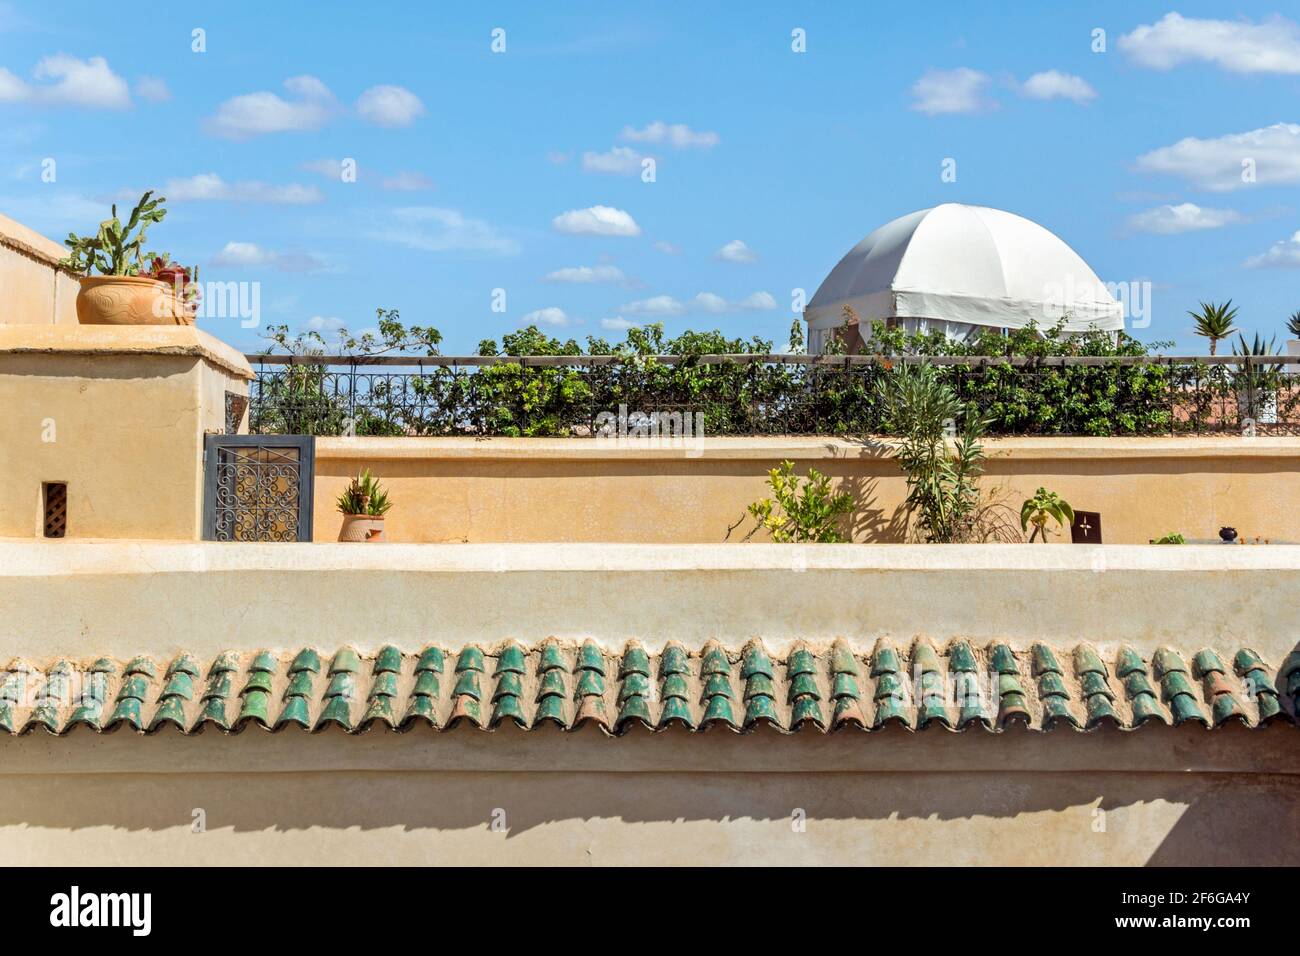 Jardin sur le toit-terrasse dans un riad marocain traditionnel Banque D'Images